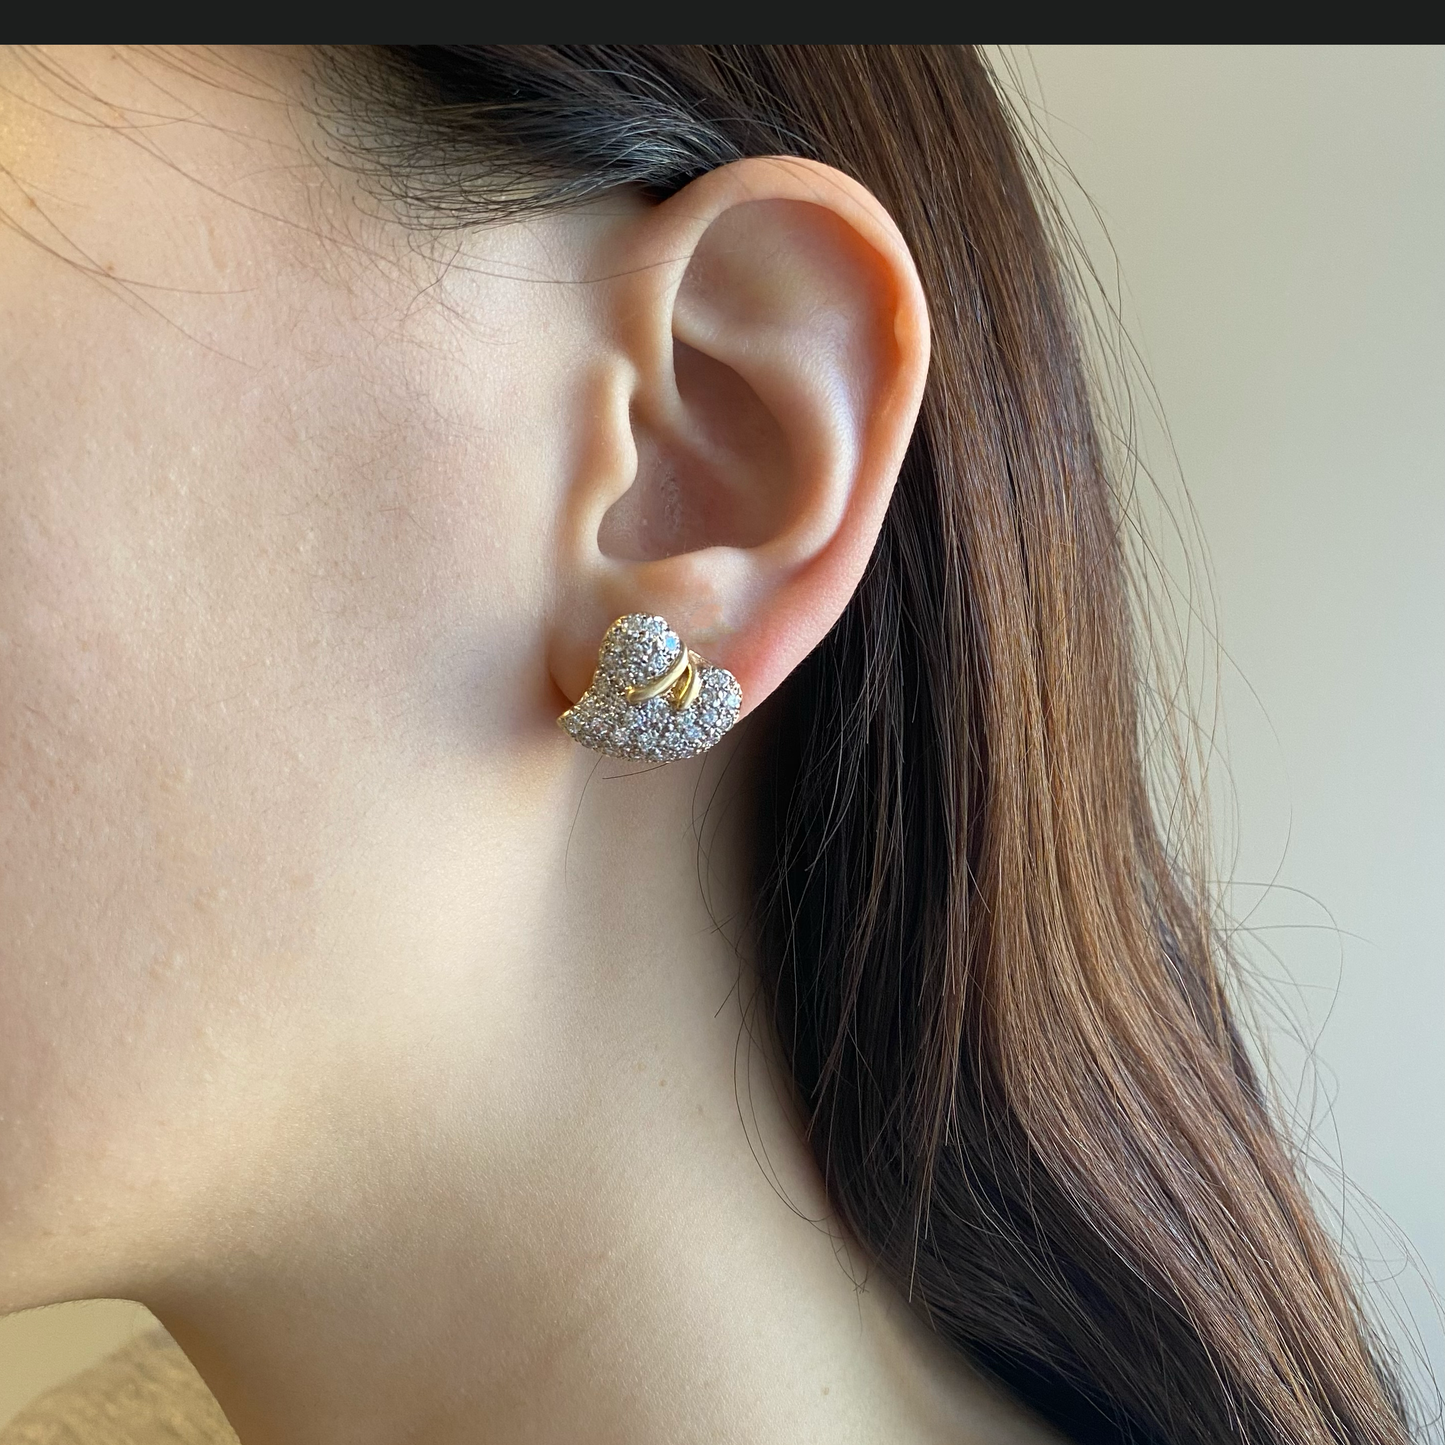 1970s 14KT Yellow Gold Diamond Earrings worn on ear